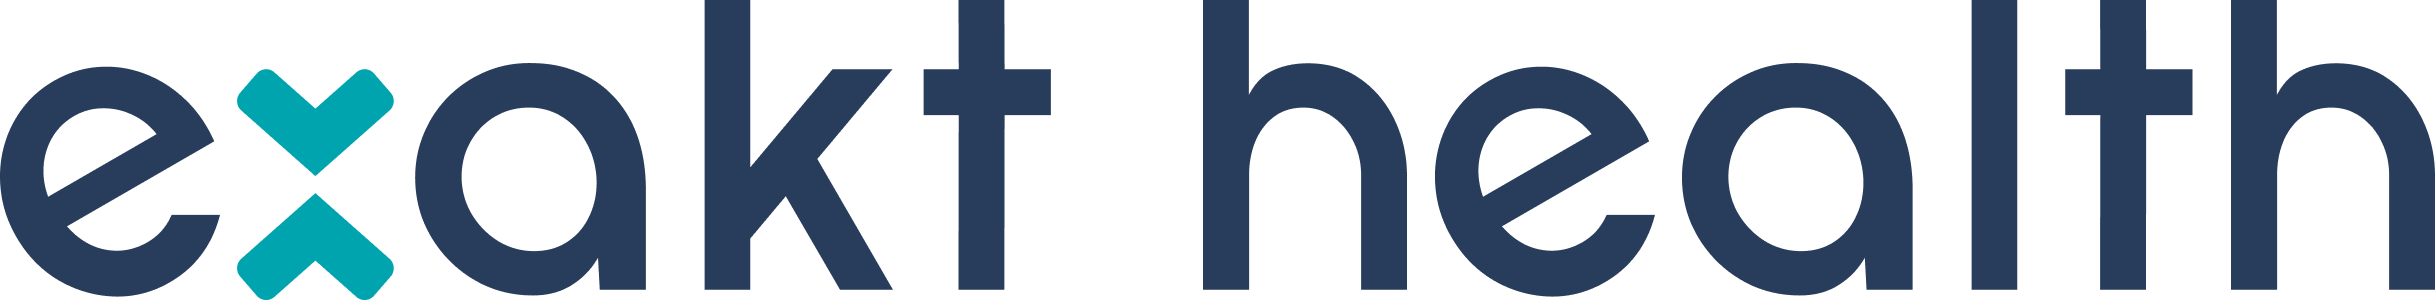 Exakt Health logo